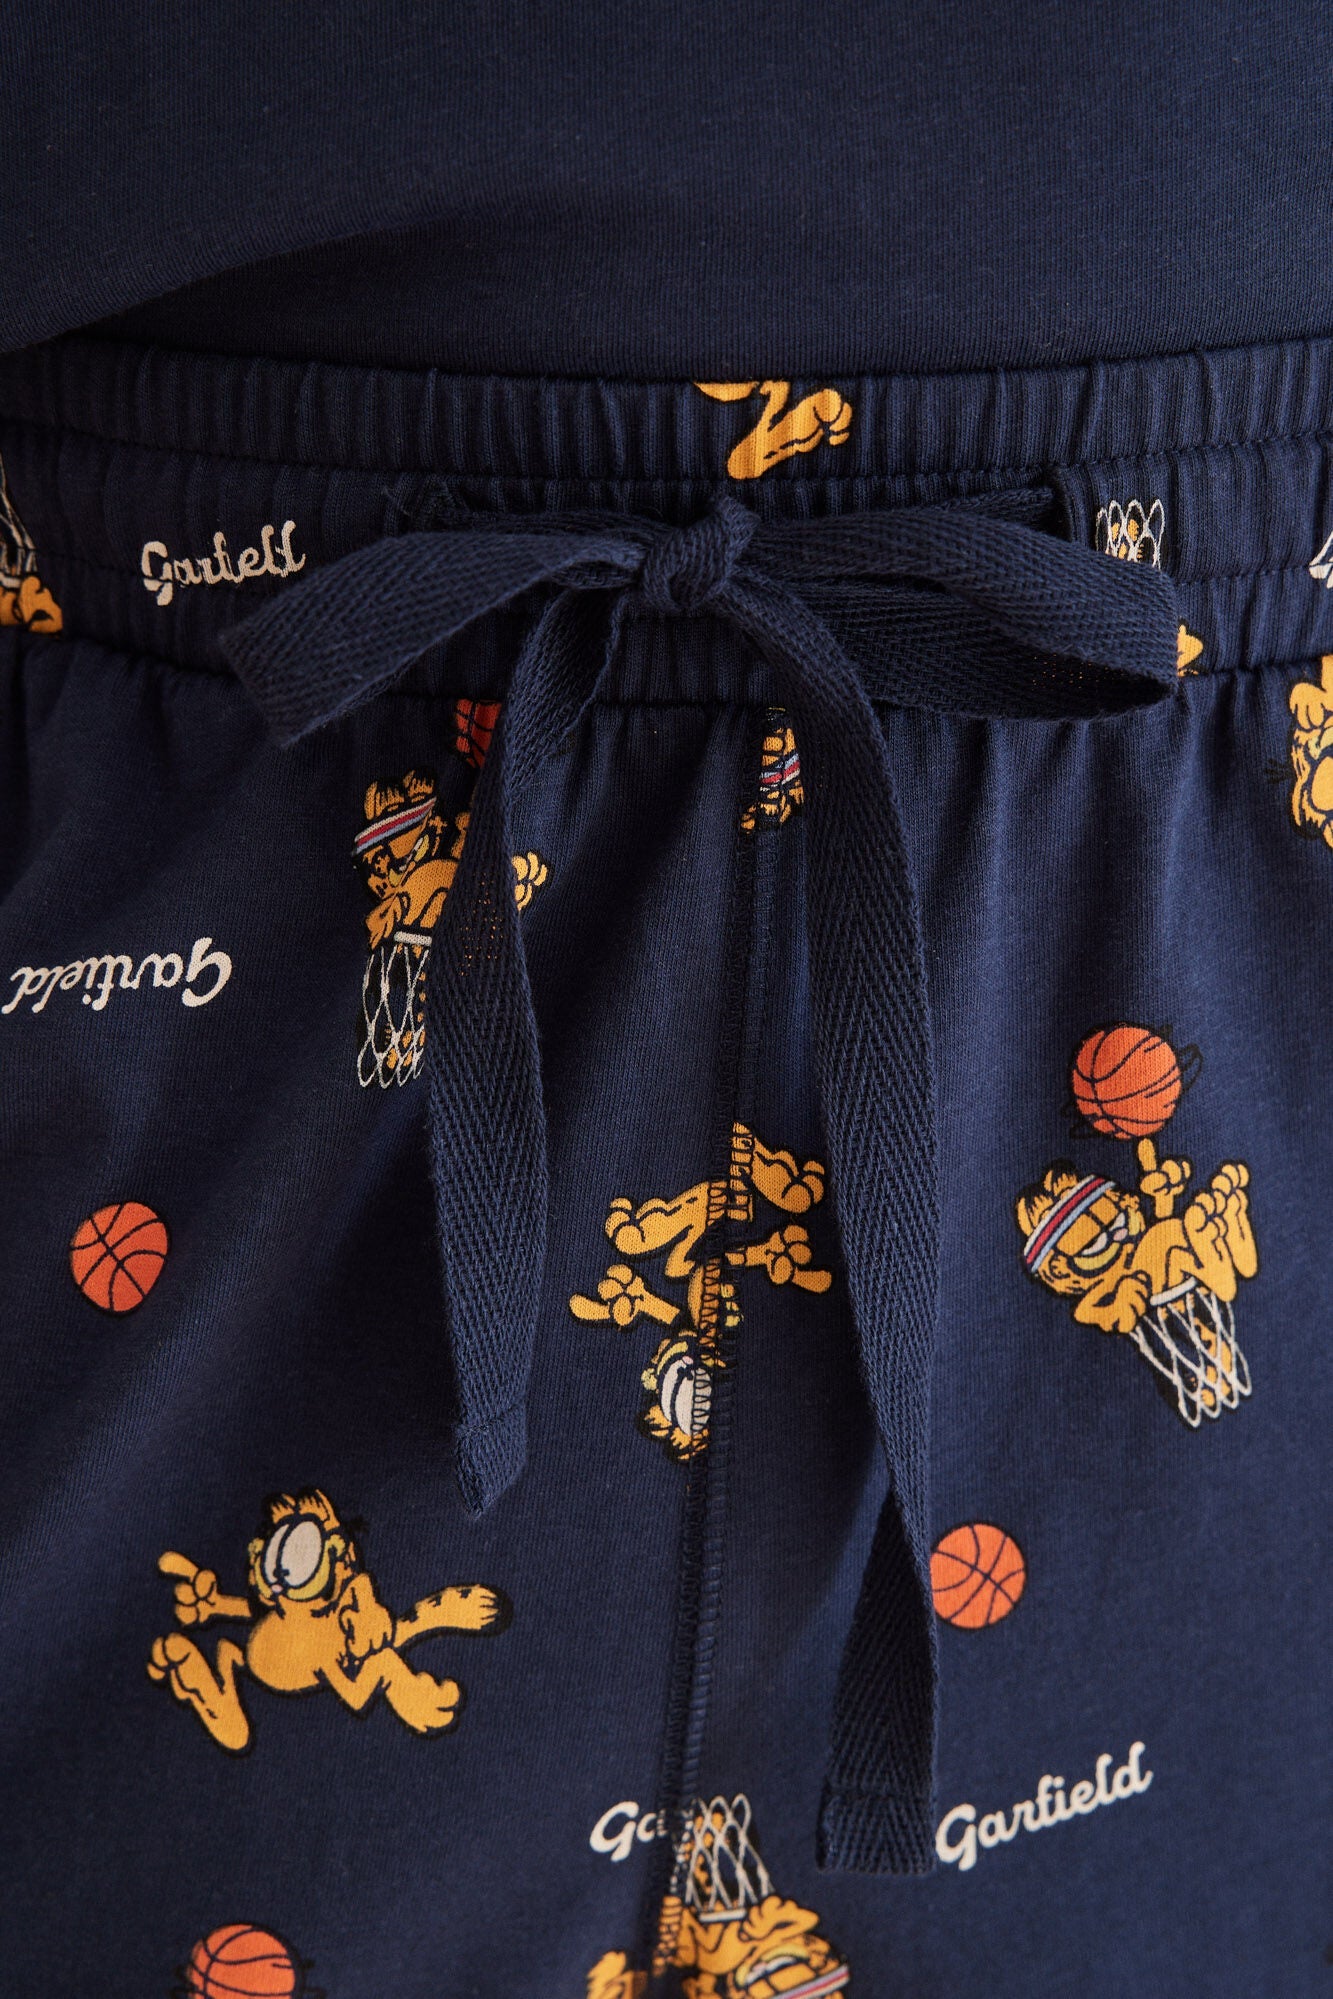 Garfield men's 100% cotton pajamas